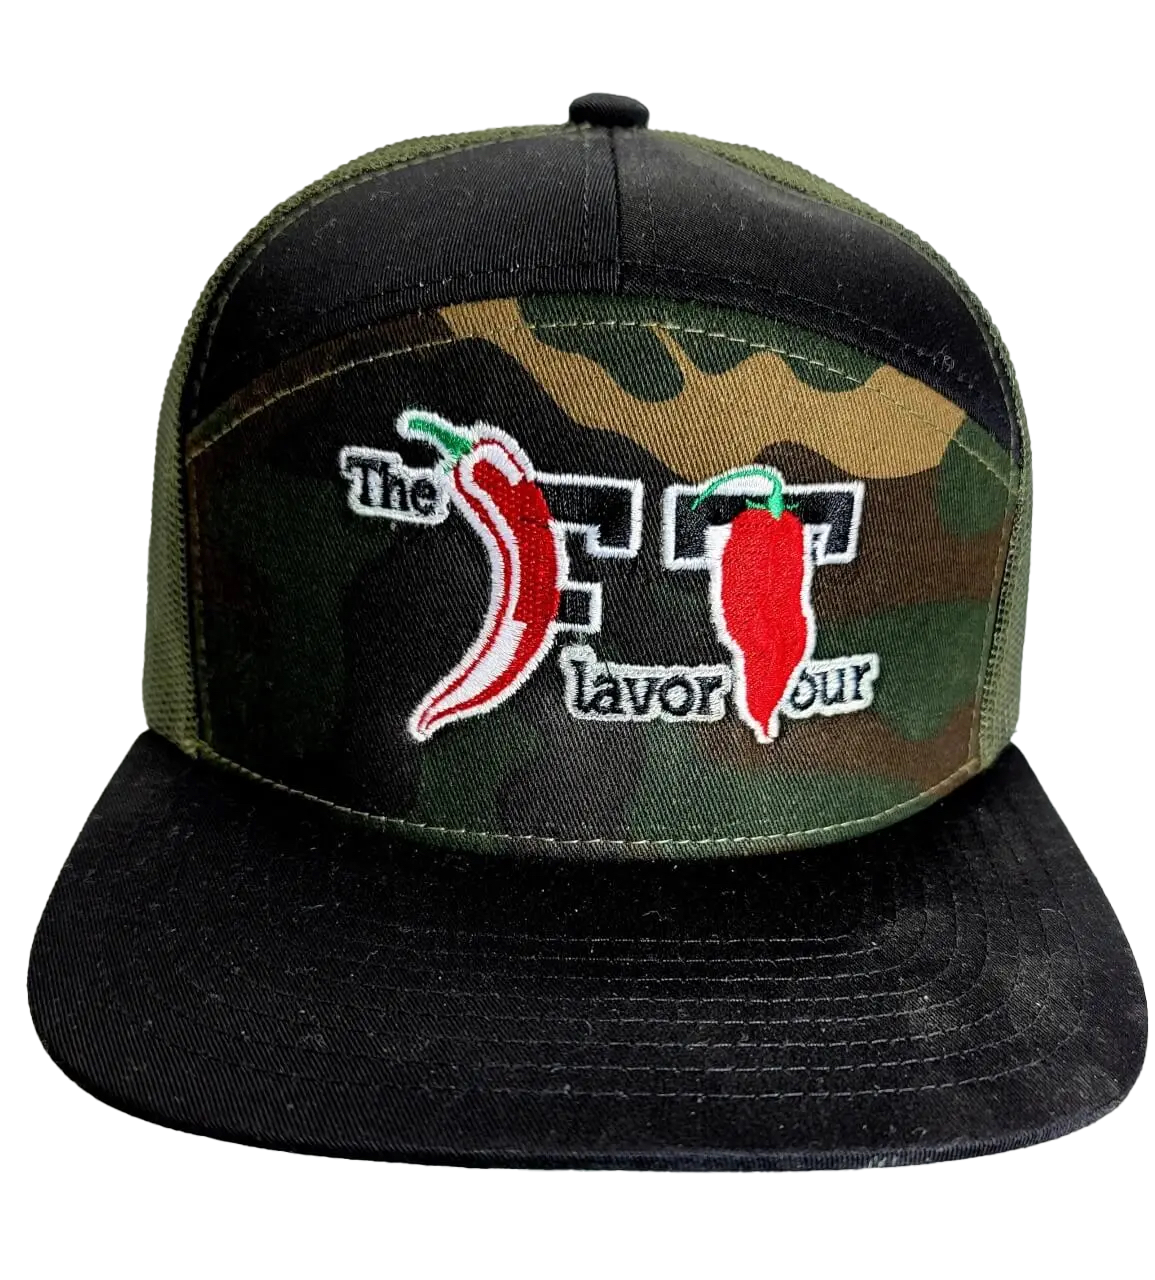 The Flavor Tour Hat